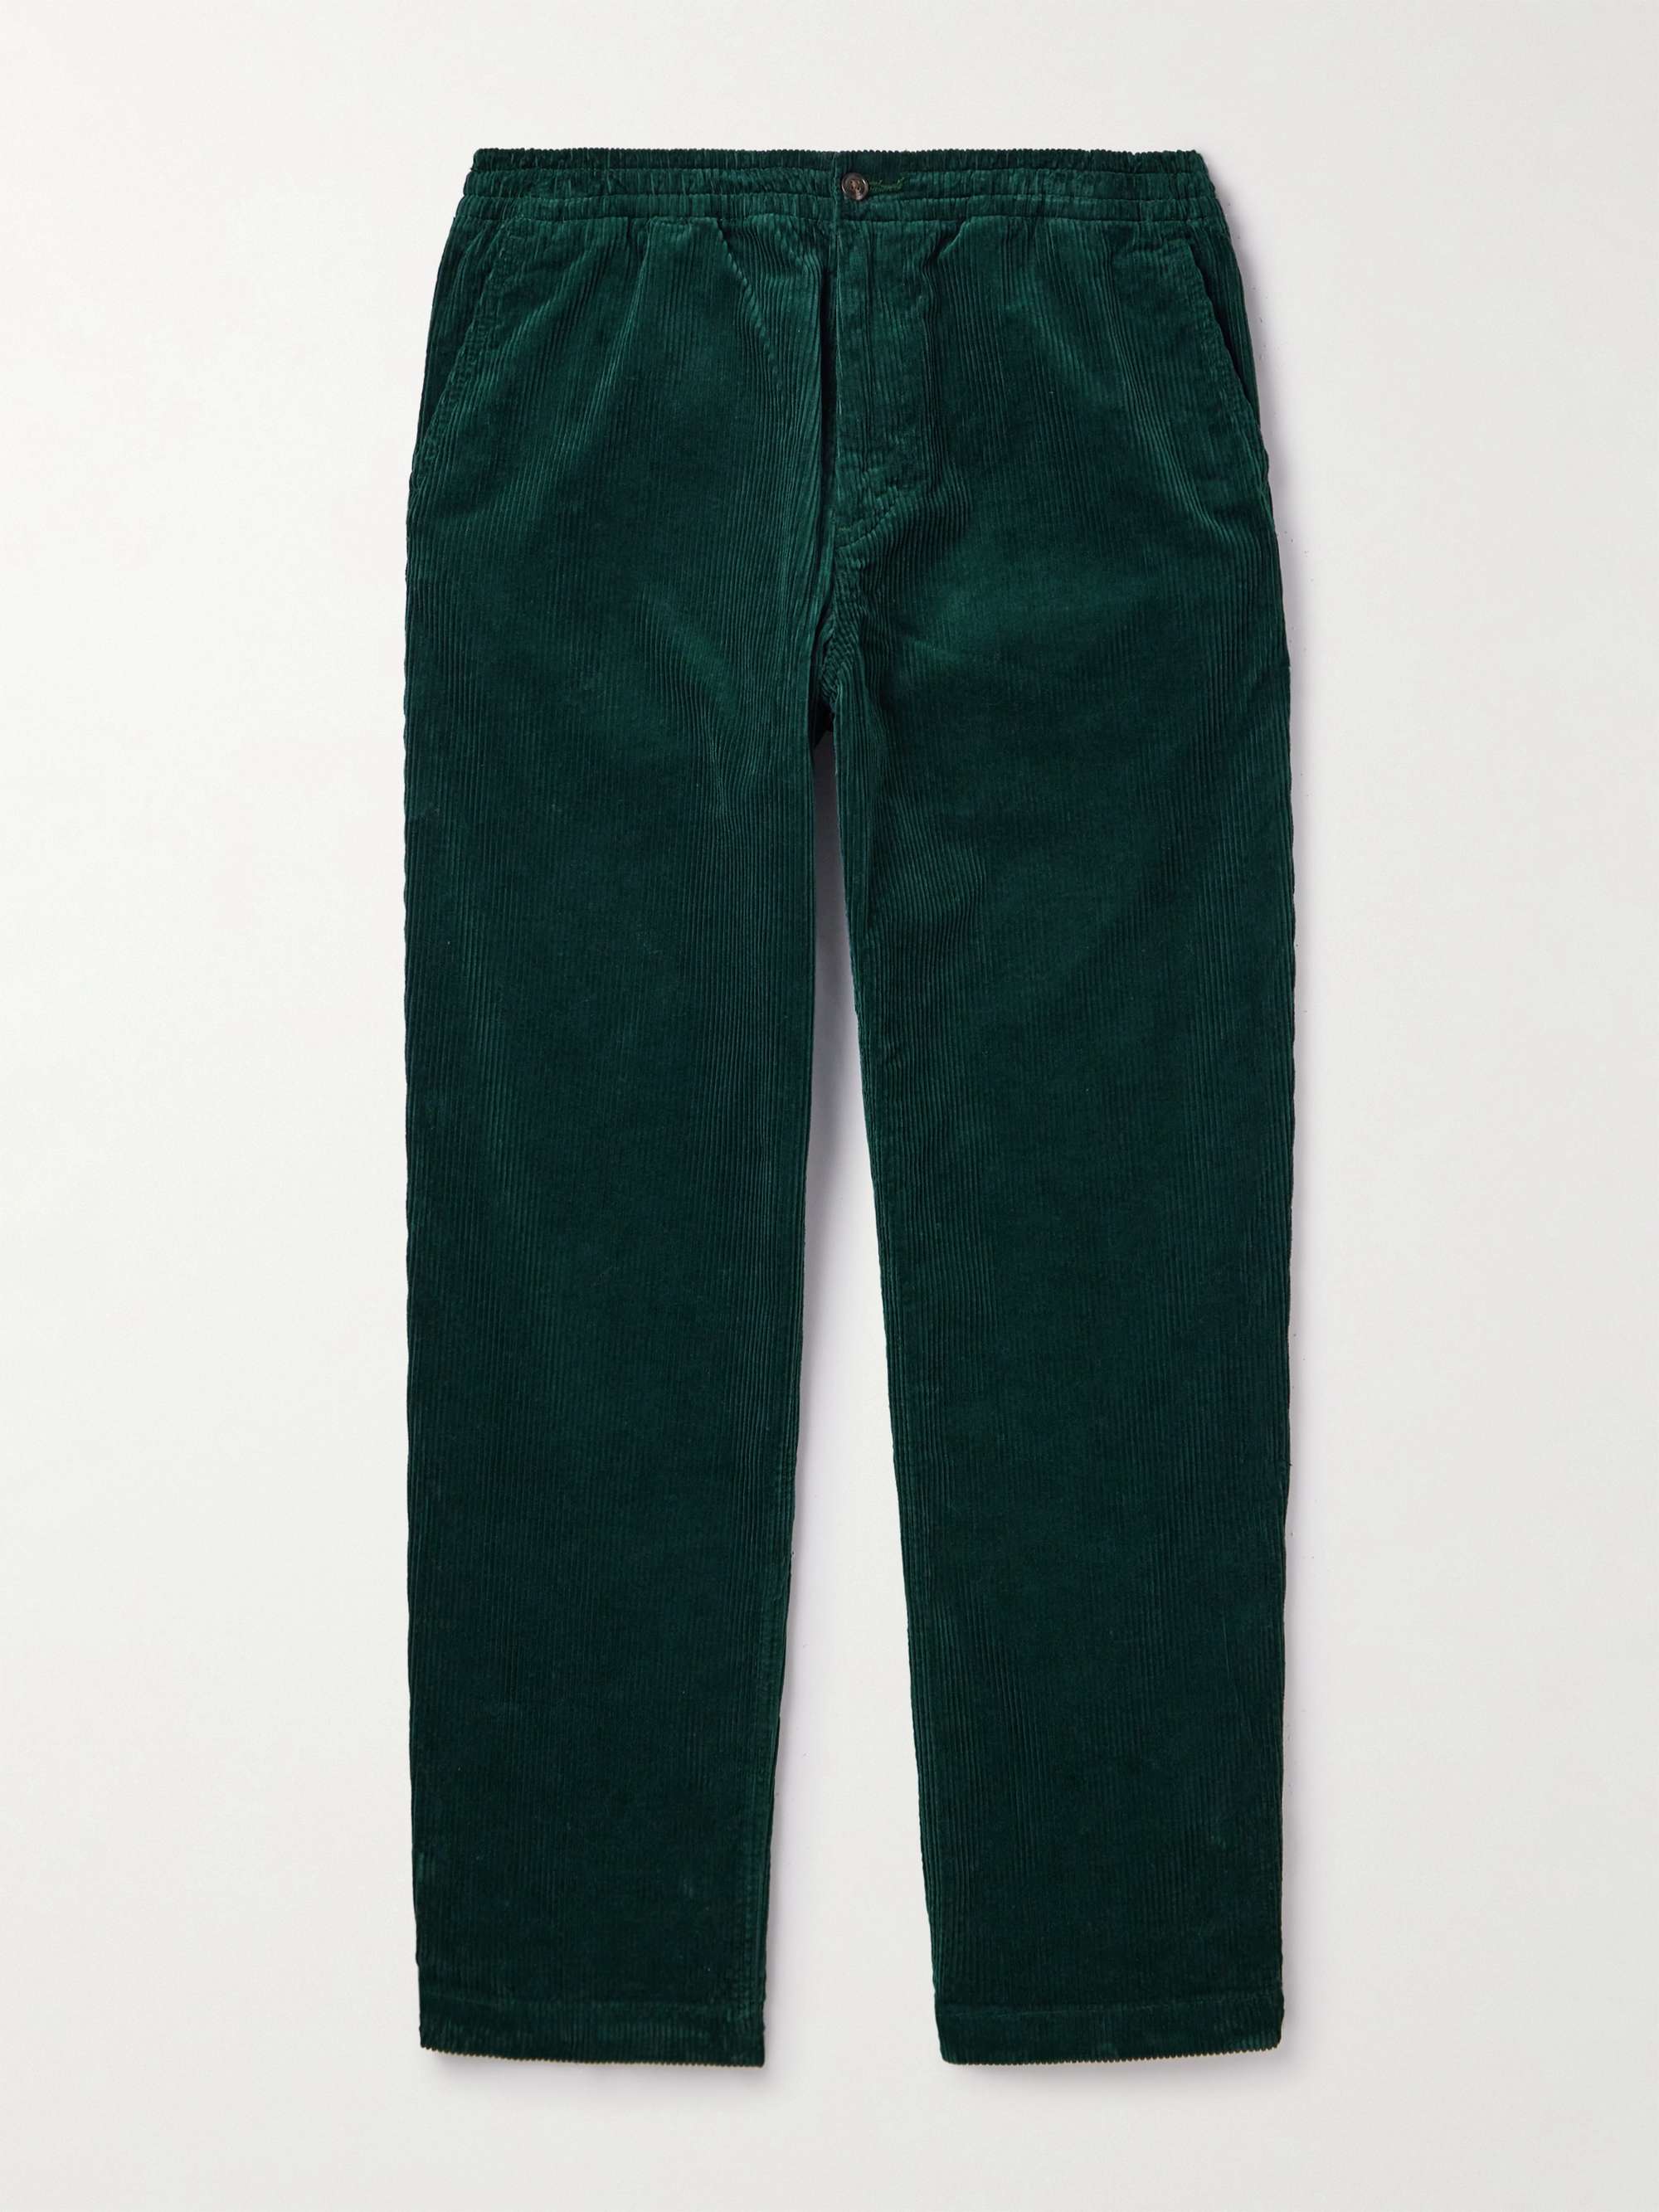 POLO RALPH LAUREN Slim-Fit Cotton-Cordroy Trousers for Men | MR PORTER